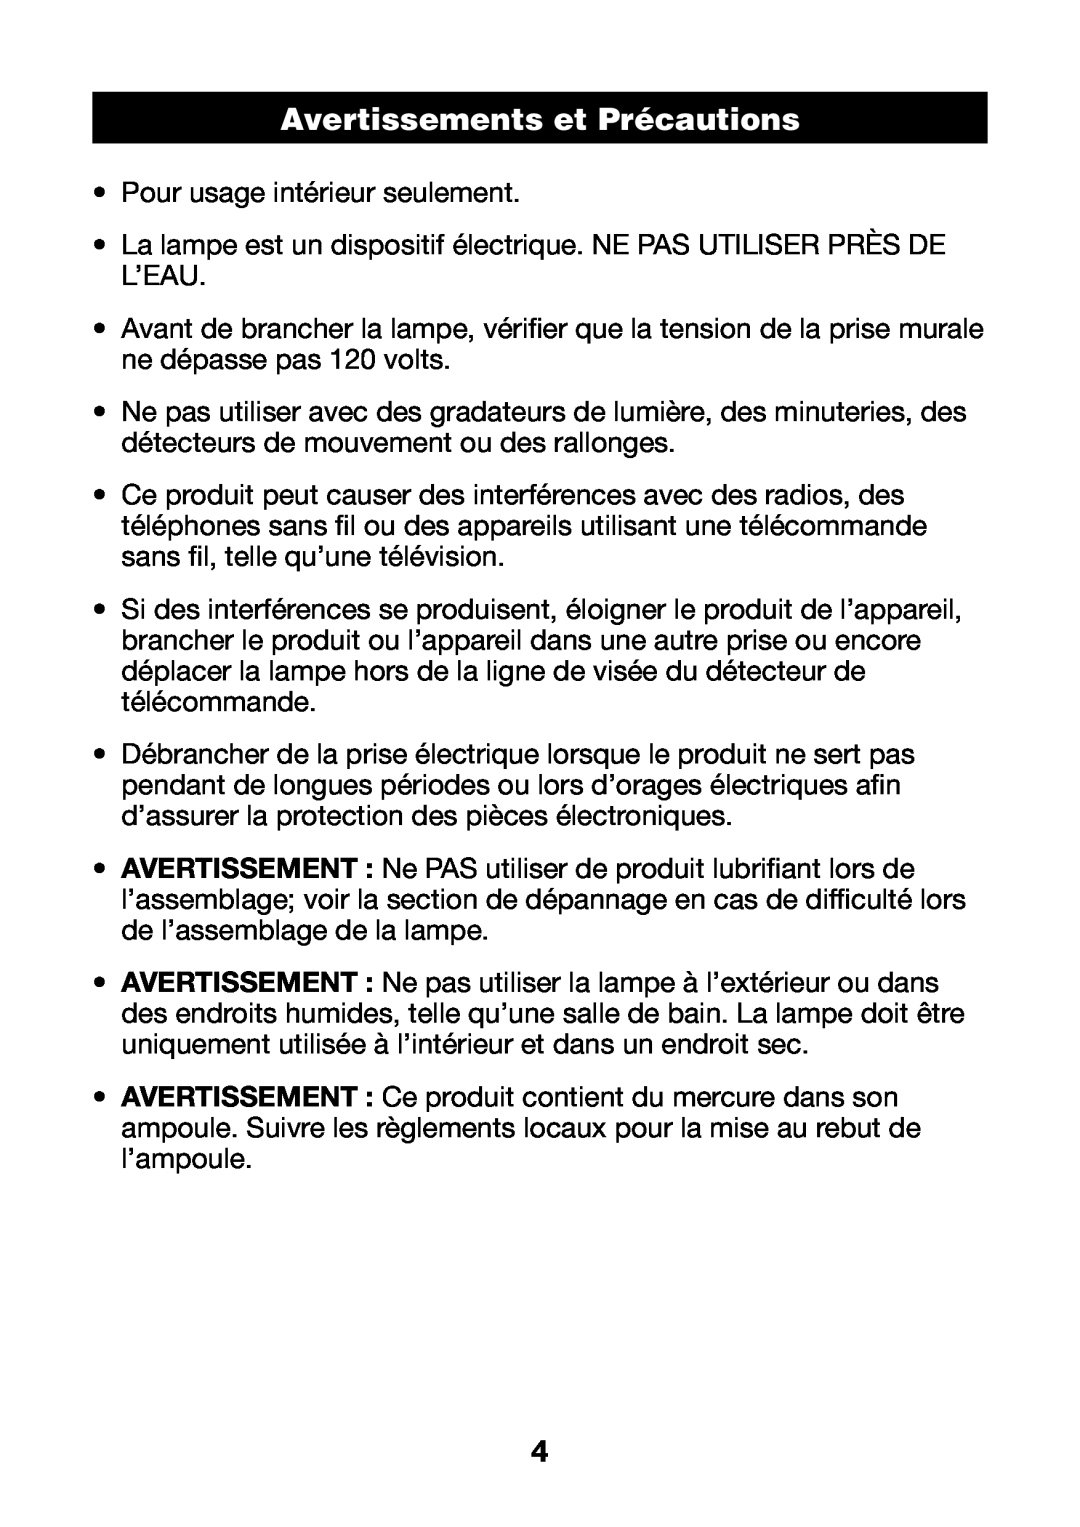 Verilux PL03 manual Avertissements et Précautions 